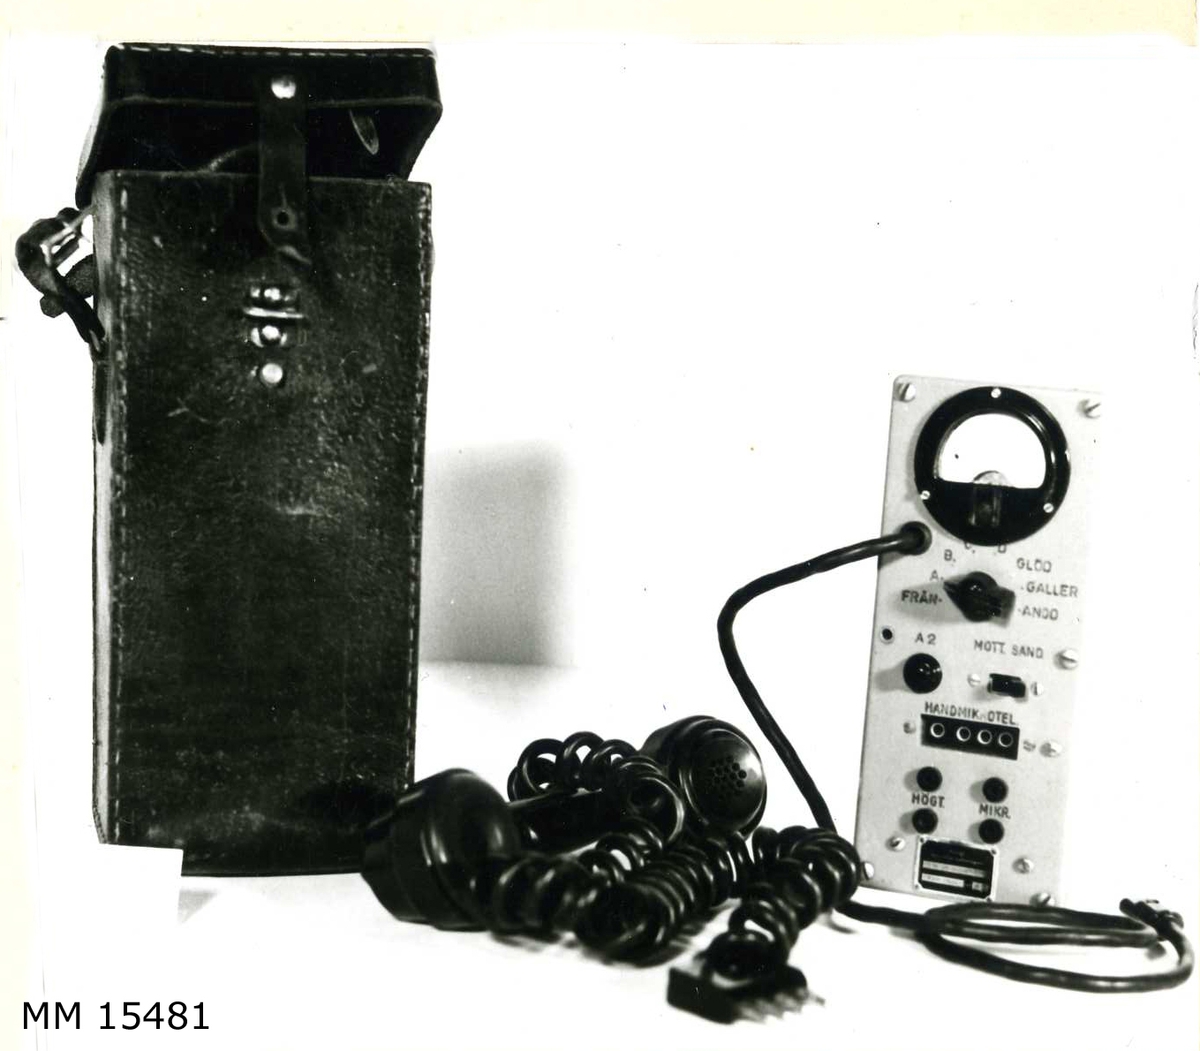 Kontrollbox för 5 W UK-station m/46 i rektangulär gråmålad låda med mätare överst, samt under denna tre stycken manöverknappar för inställninga av olika funktioner. En stickproppsförsedd handmikrotelefon medföljrer, avsedd att kopplas in i uttag under ovan nämnda manöverknappar. Hela utrustningen med unfantag av handmikrotelefonen förvaras i ett svart läderfodral med bärrem.
På fastnitad skylt: "Kungl Marinförvaltningen, 5 W UK-station M/46, Kontrollbox nr 131". Handmikrotelefonen märkt med tre kronor.